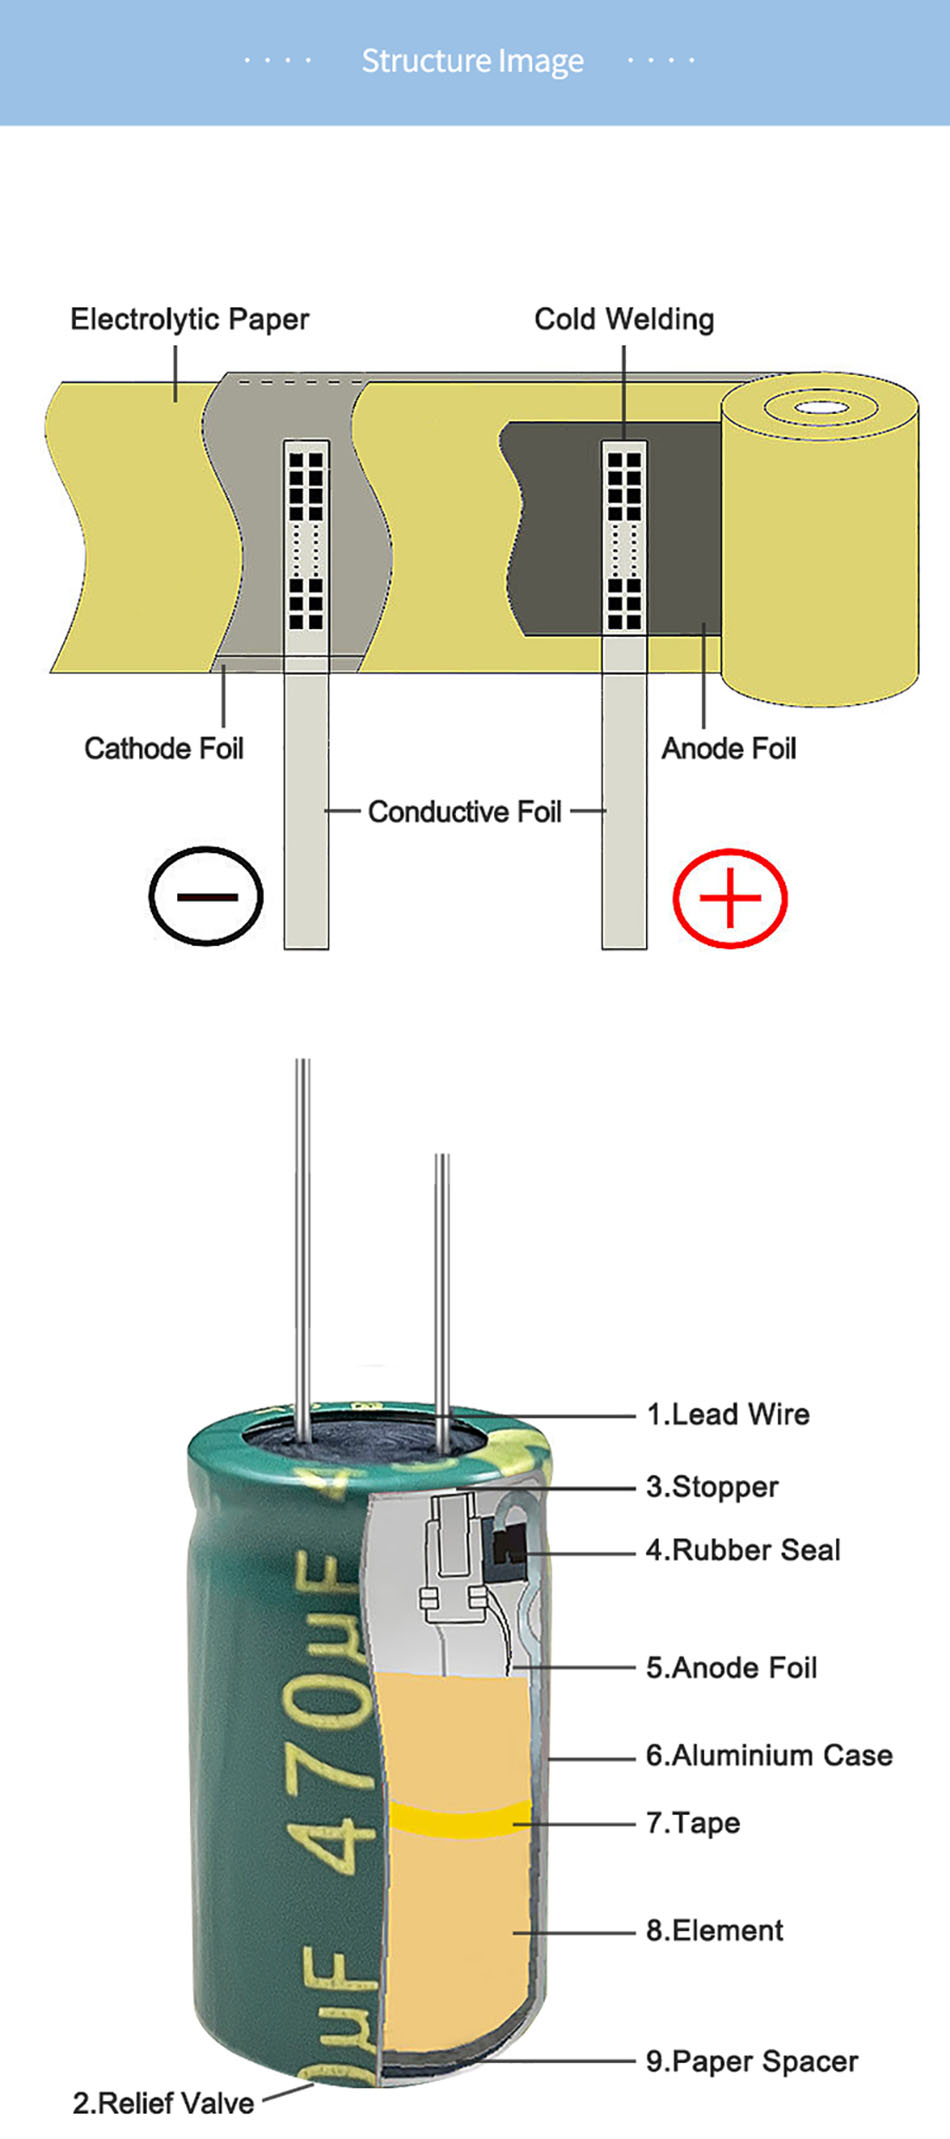 Kondensatur Elettrolitiku tal-Aluminju (6)